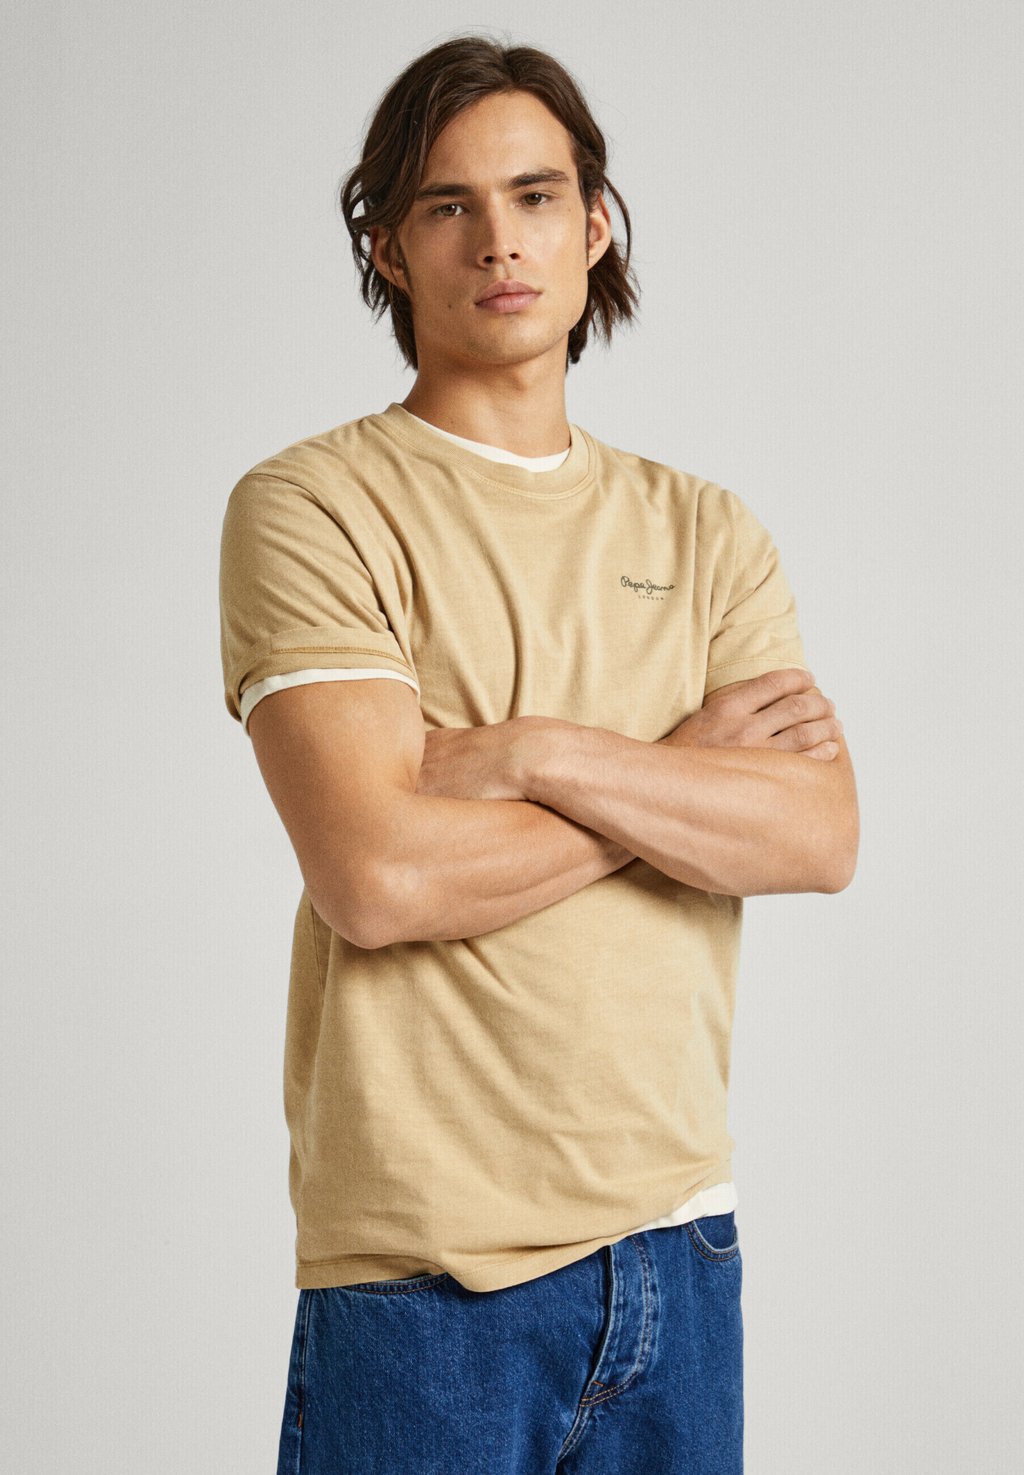 Базовая футболка JACKO Pepe Jeans, бежевый меланж базовая футболка jacko pepe jeans цвет ivory white